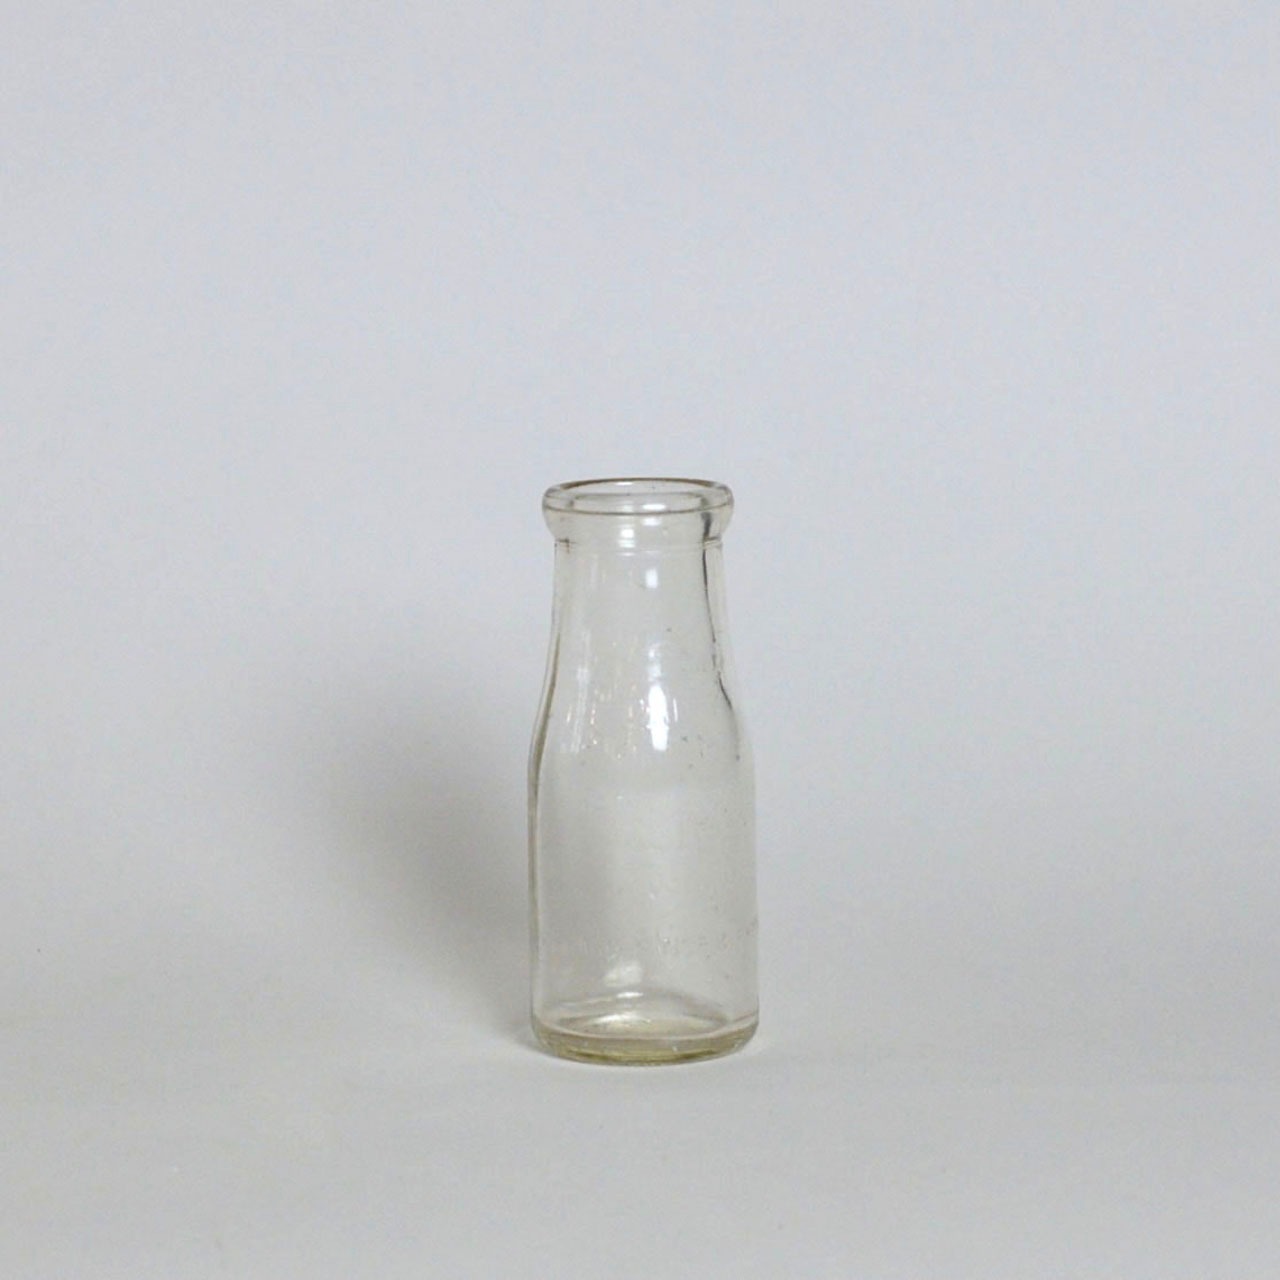 Bottle / ボトル【C】〈花瓶 / フラワーベース / 一輪挿し/ ガラスボトル〉SB2012-0003